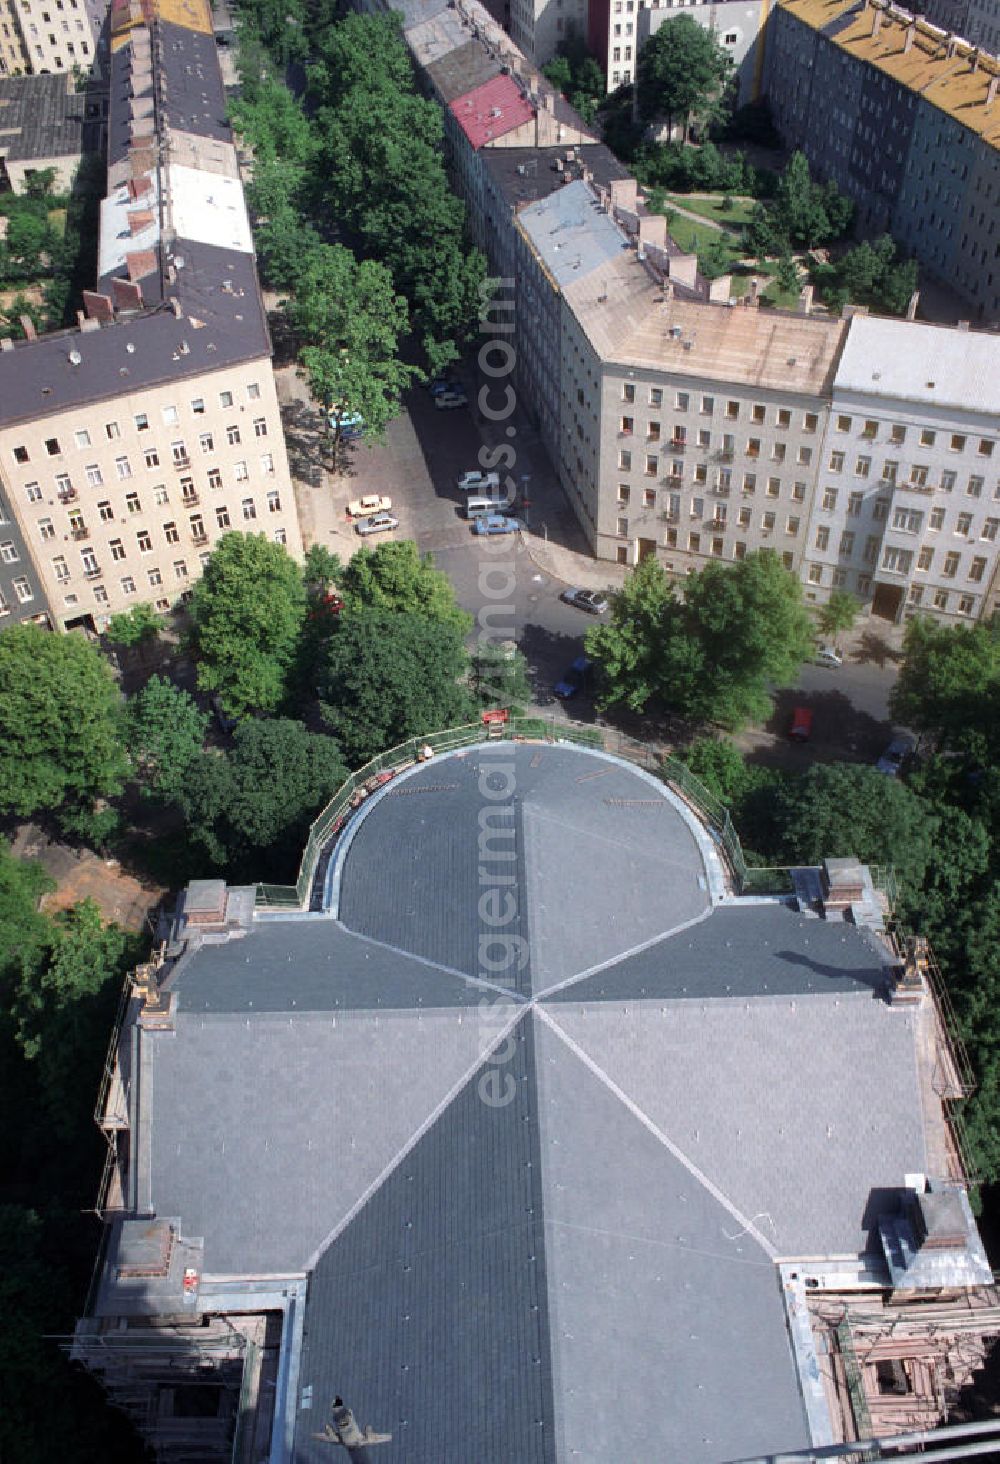 Berlin: Sanierungsarbeiten an der Zionskirche in Berlin-Mitte. Blick vom Turm auf das Dach der Kirche / Chor und die Swinemünder Strasse.